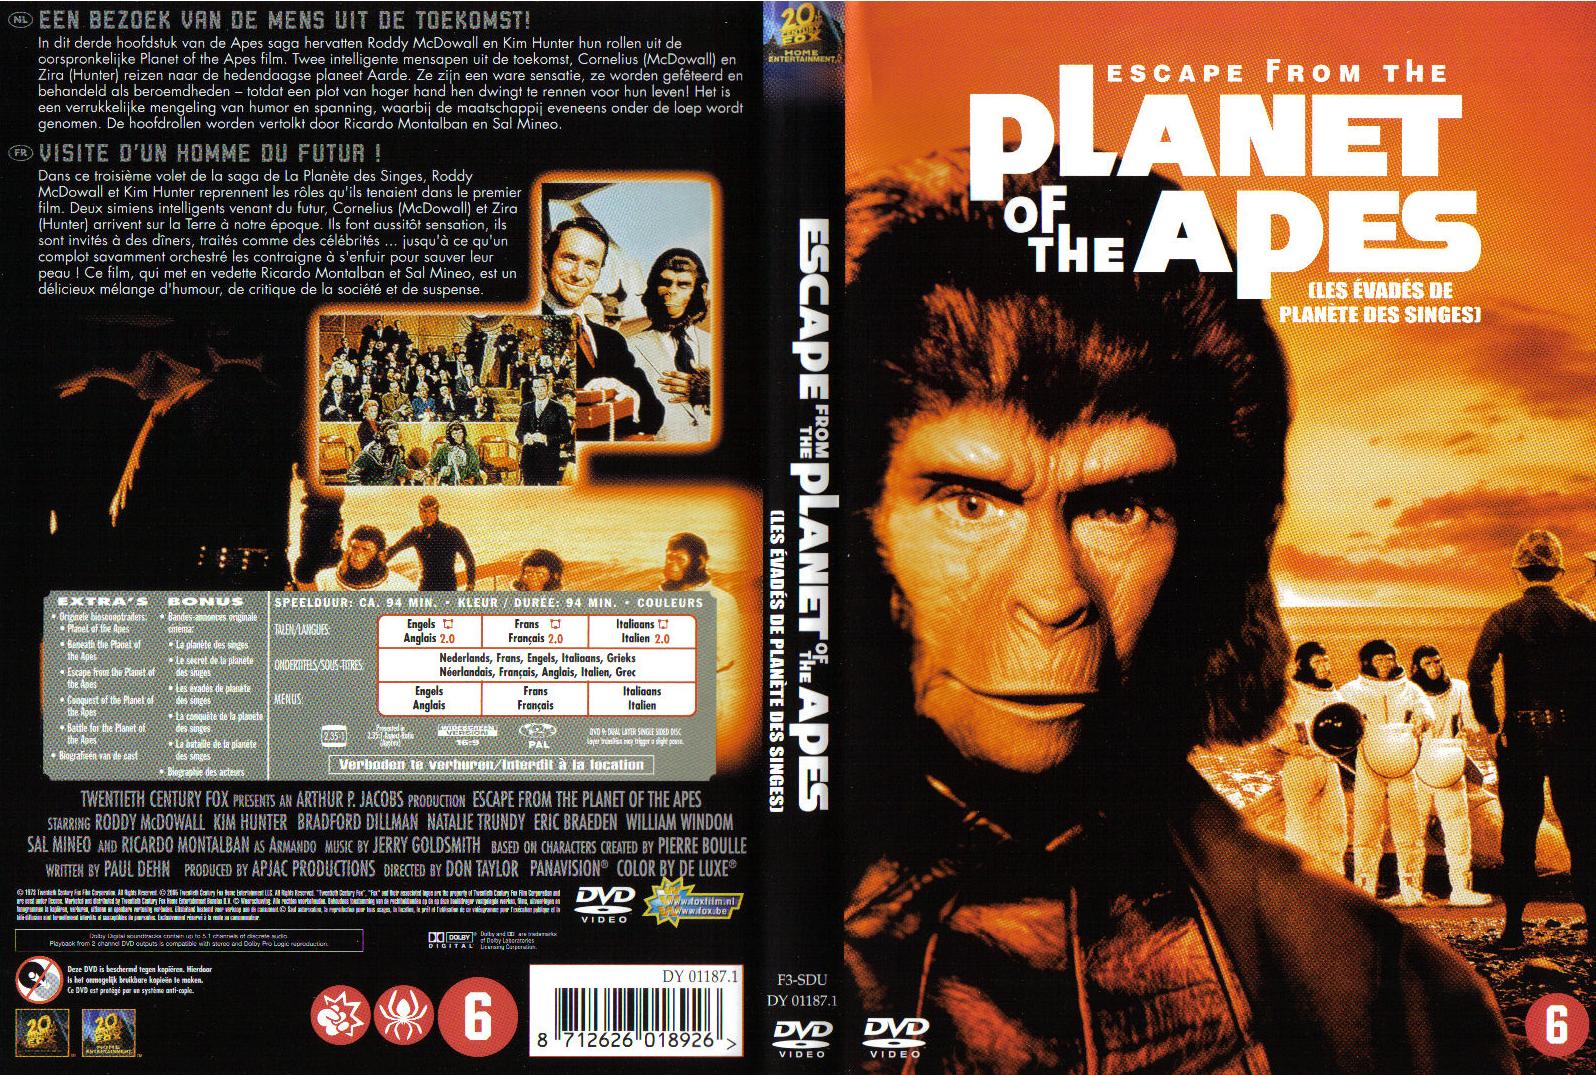 Jaquette DVD Les vades de la planete des singes